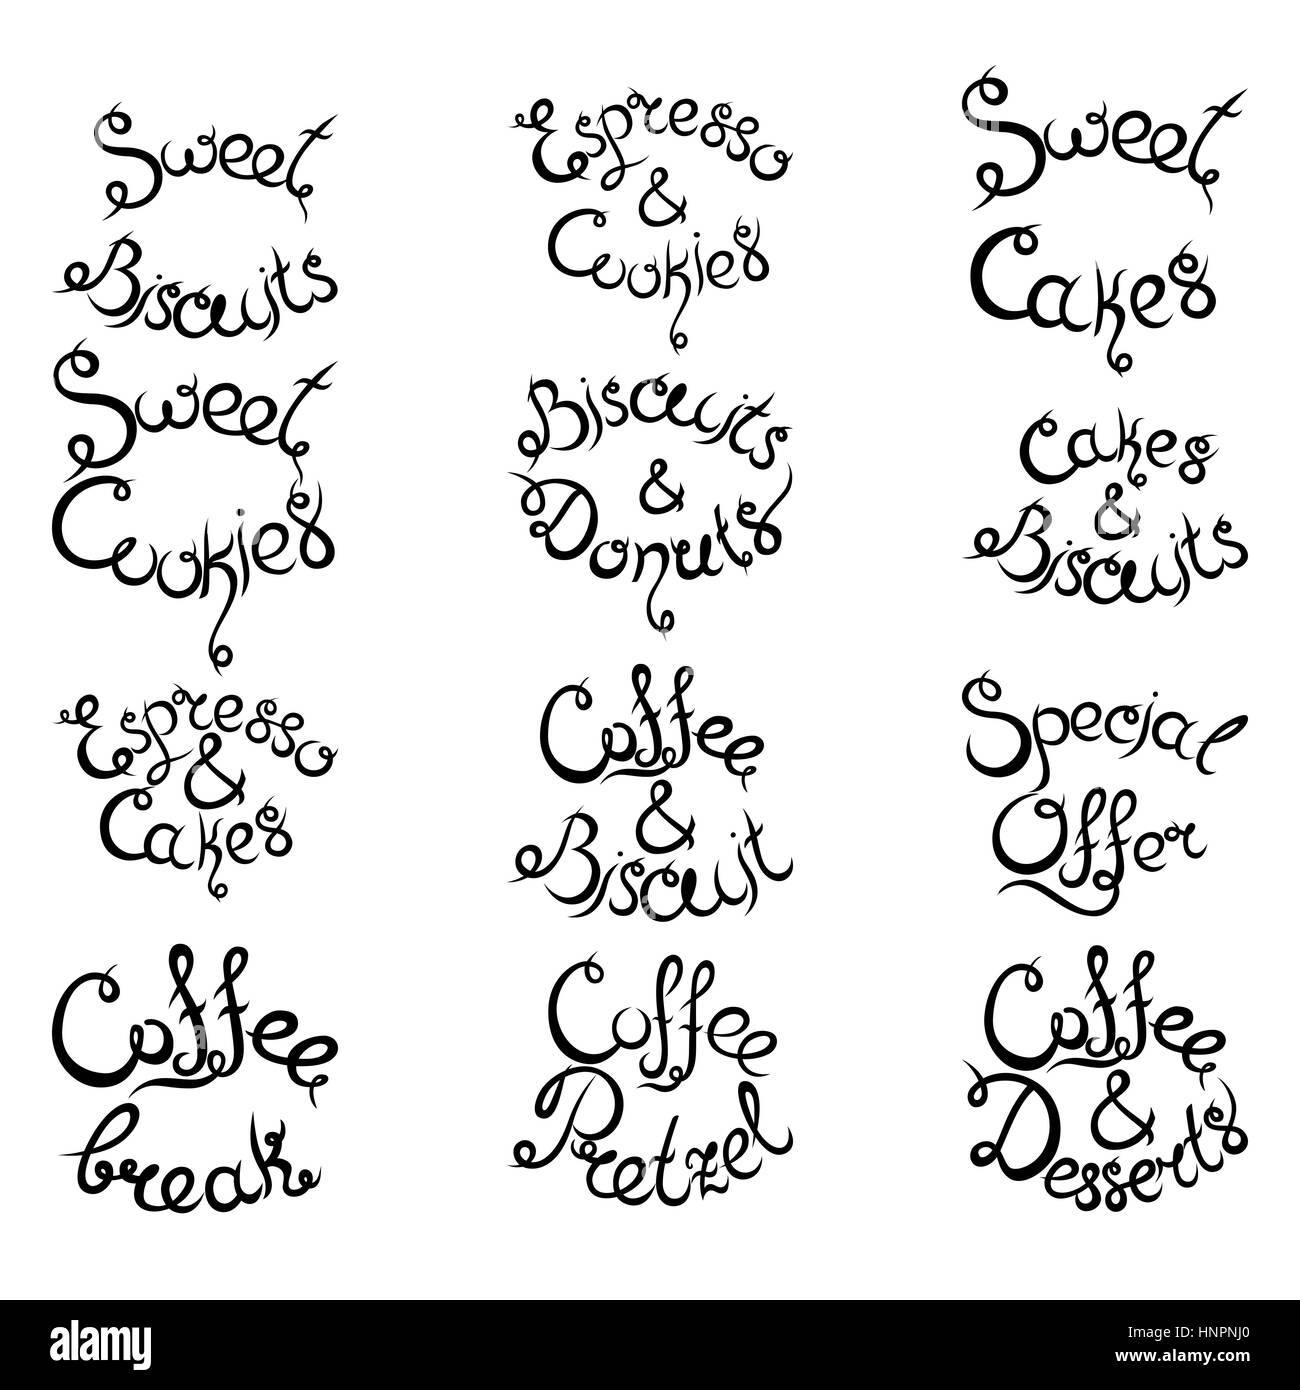 Set 3 de curly lettrage dessiné à la main des expressions pour Café. Espresso Cappuccino Gâteaux Donuts Macarons Cookies Biscuits Latte Macchiatto tasse de café Illustration de Vecteur